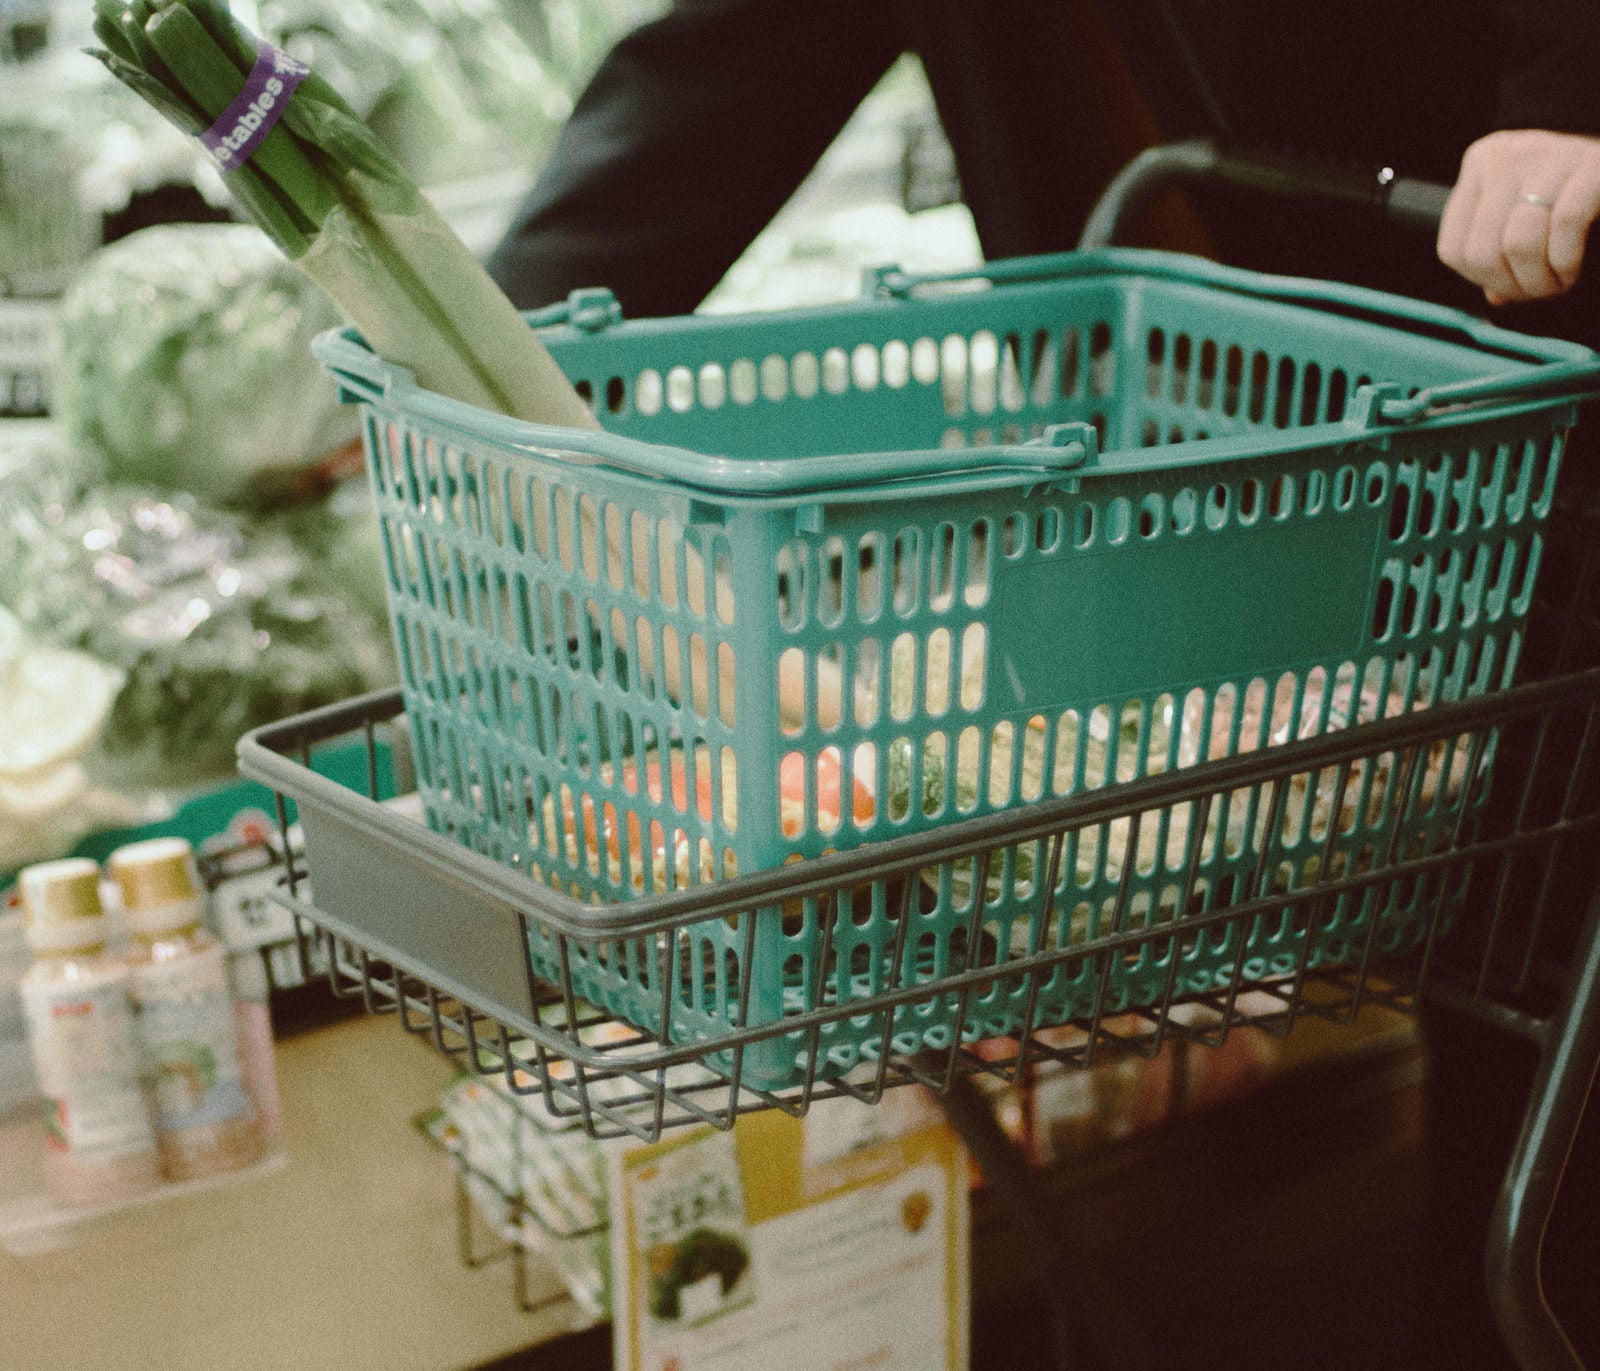 「小高ストアでカートに野菜をいれてお買い物」の写真